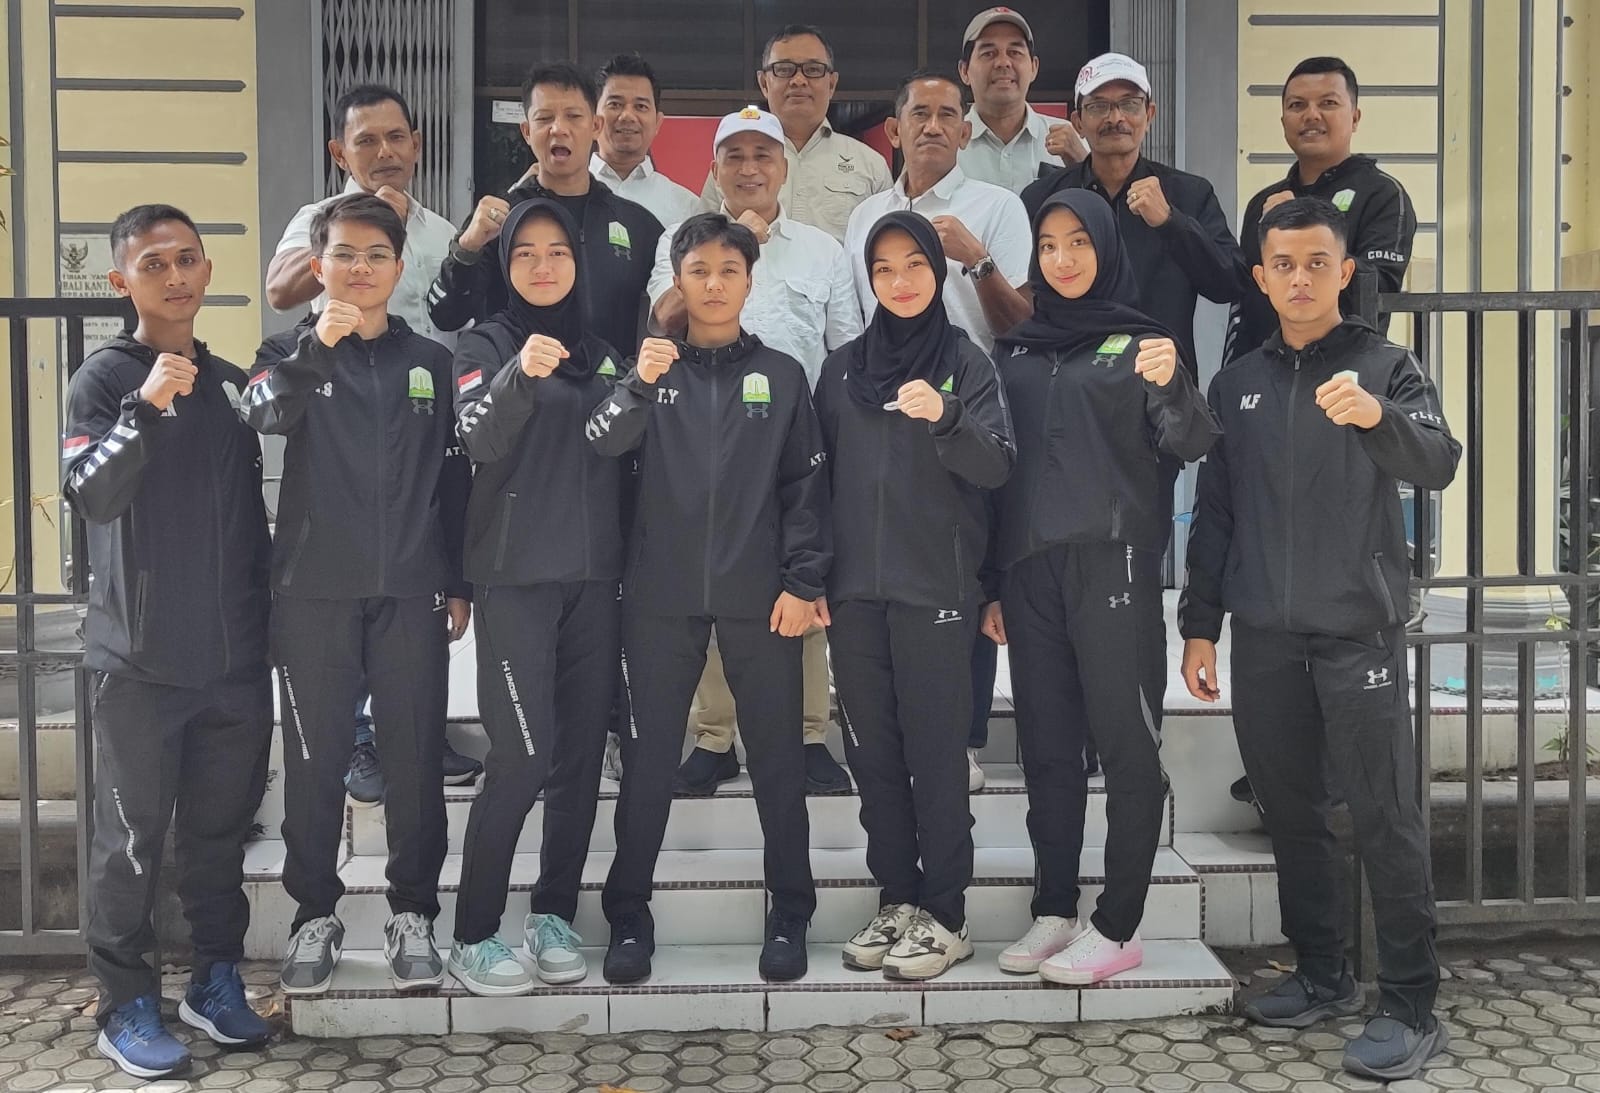 Ketua Umum KONI Aceh H. Kamaruddin Abu Bakar secara resmi melepas karateka yang akan bertanding pada Kejuaraan KL Mayor’s Cup Karate Championship di Kuala Lumpur, Malaysia.